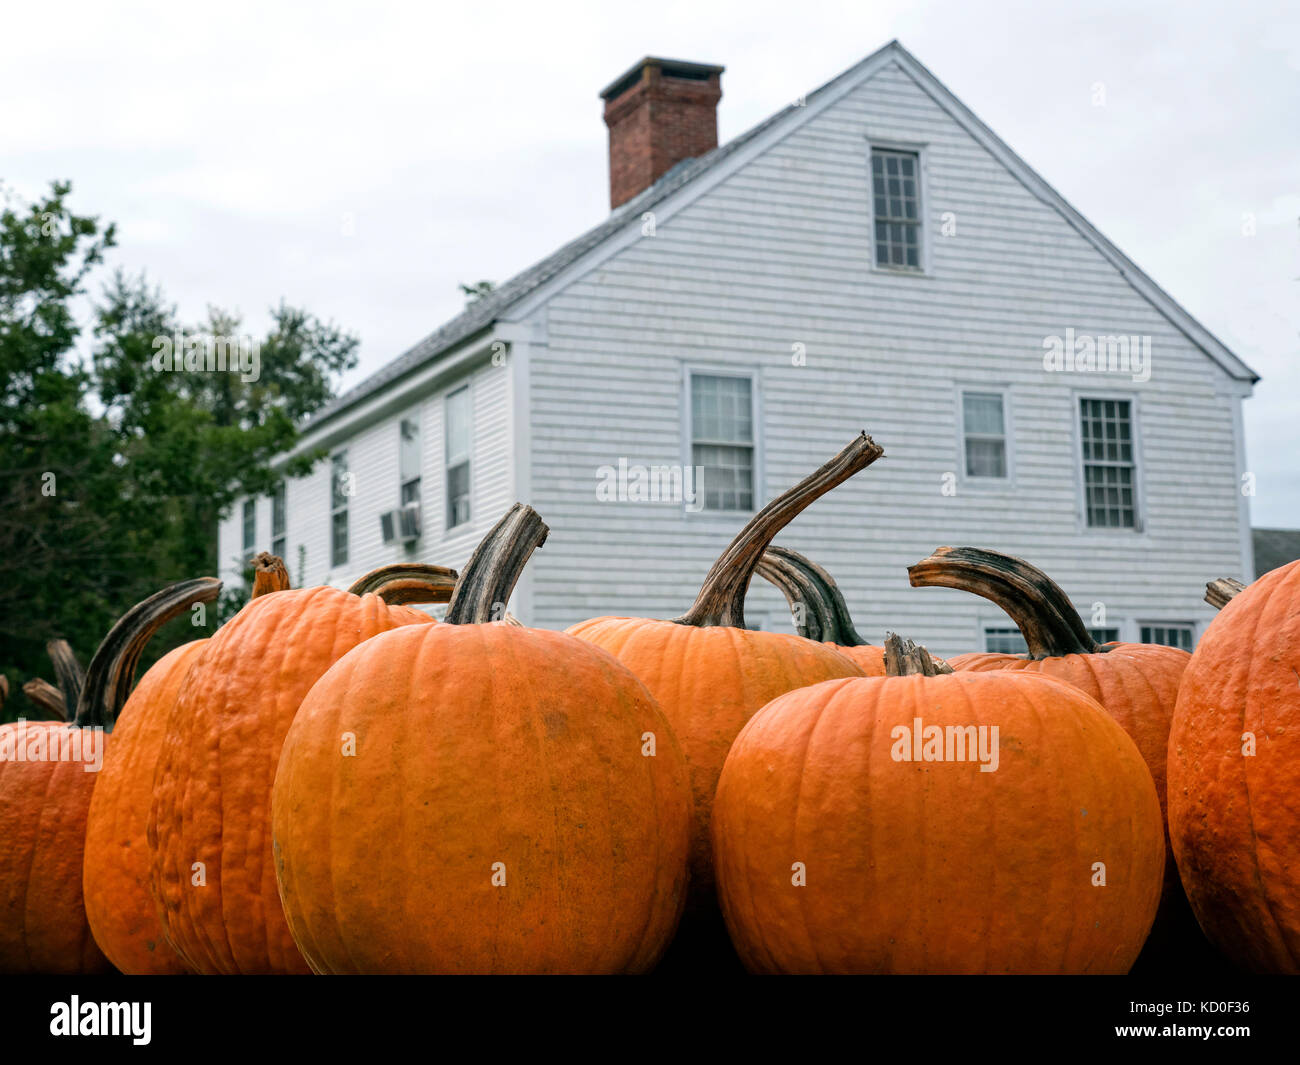 New England pumpkin farm sur cape cod, ma usa Banque D'Images